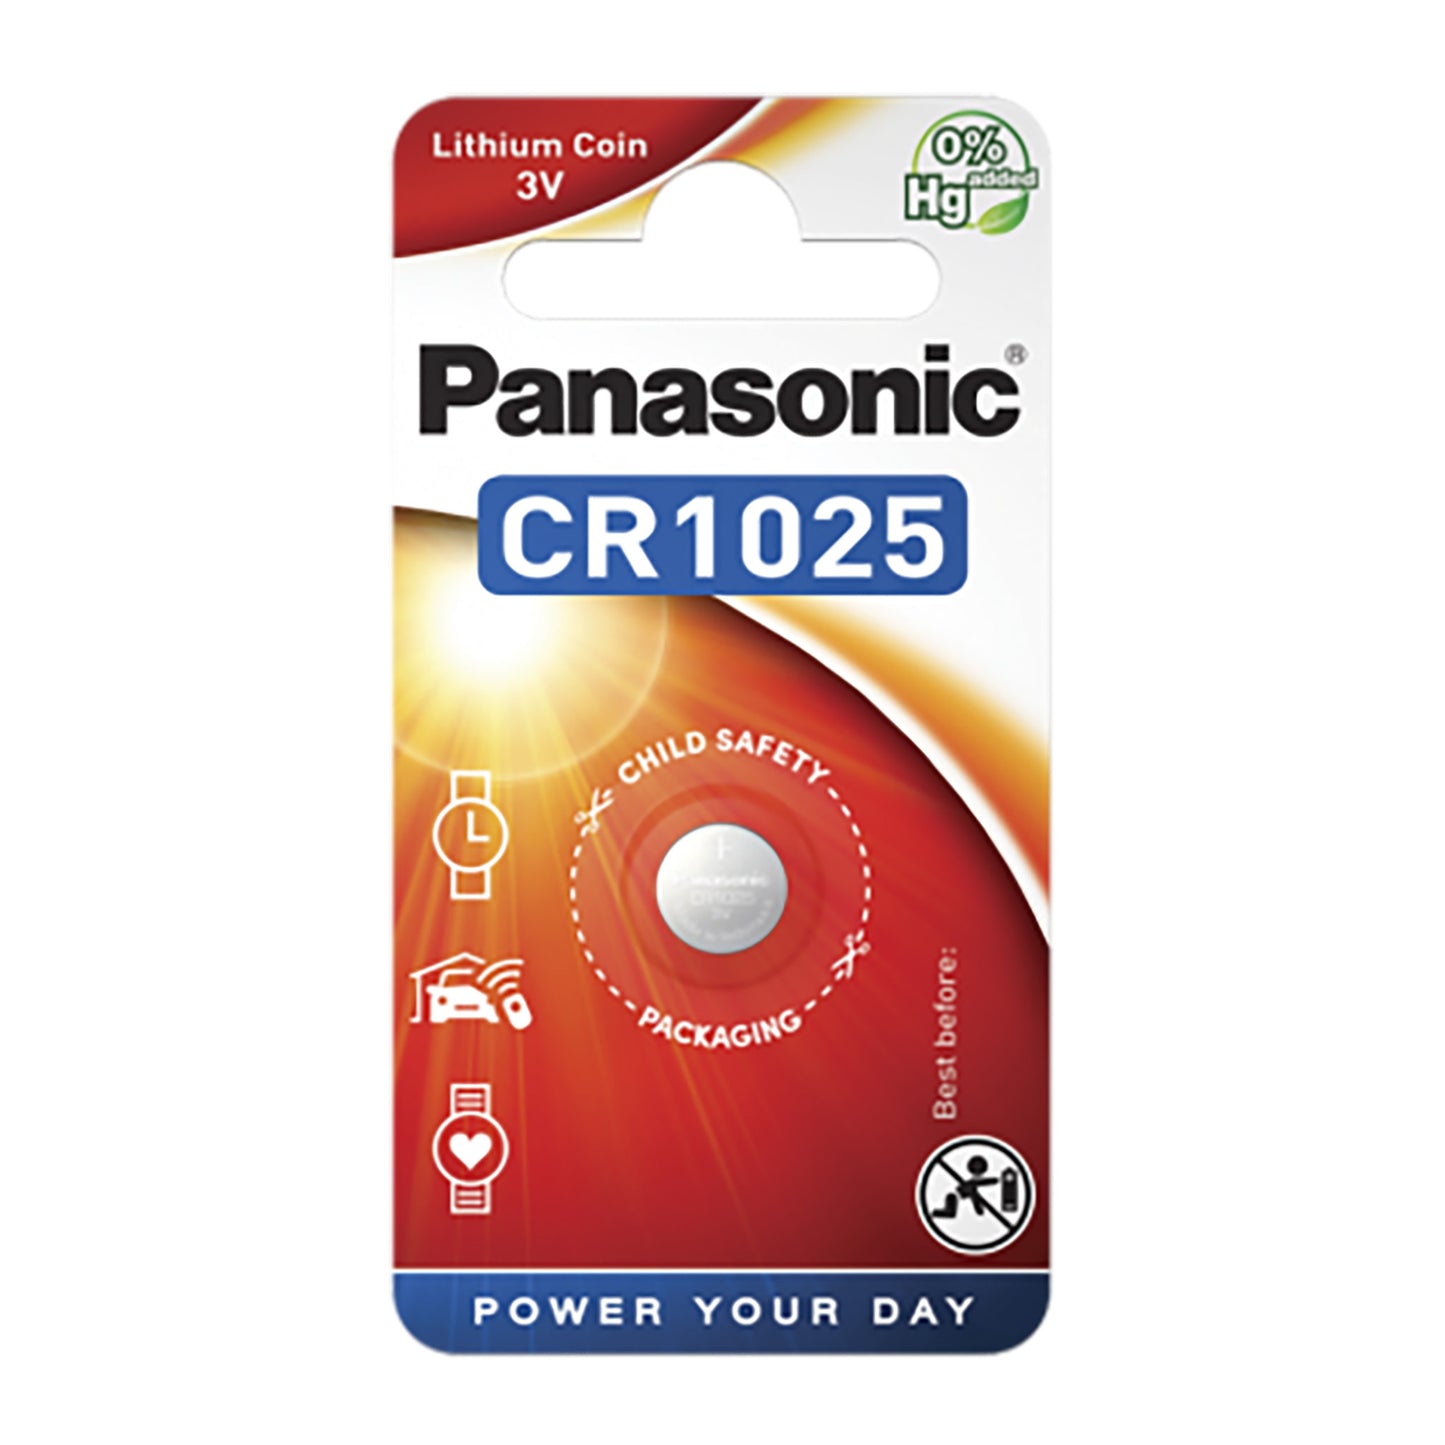 PAN-CR1025-1 - литиевая батарейка Panasonic тип CR1025, напряжение: 3 В (1 шт. в блистере), цена за блистер